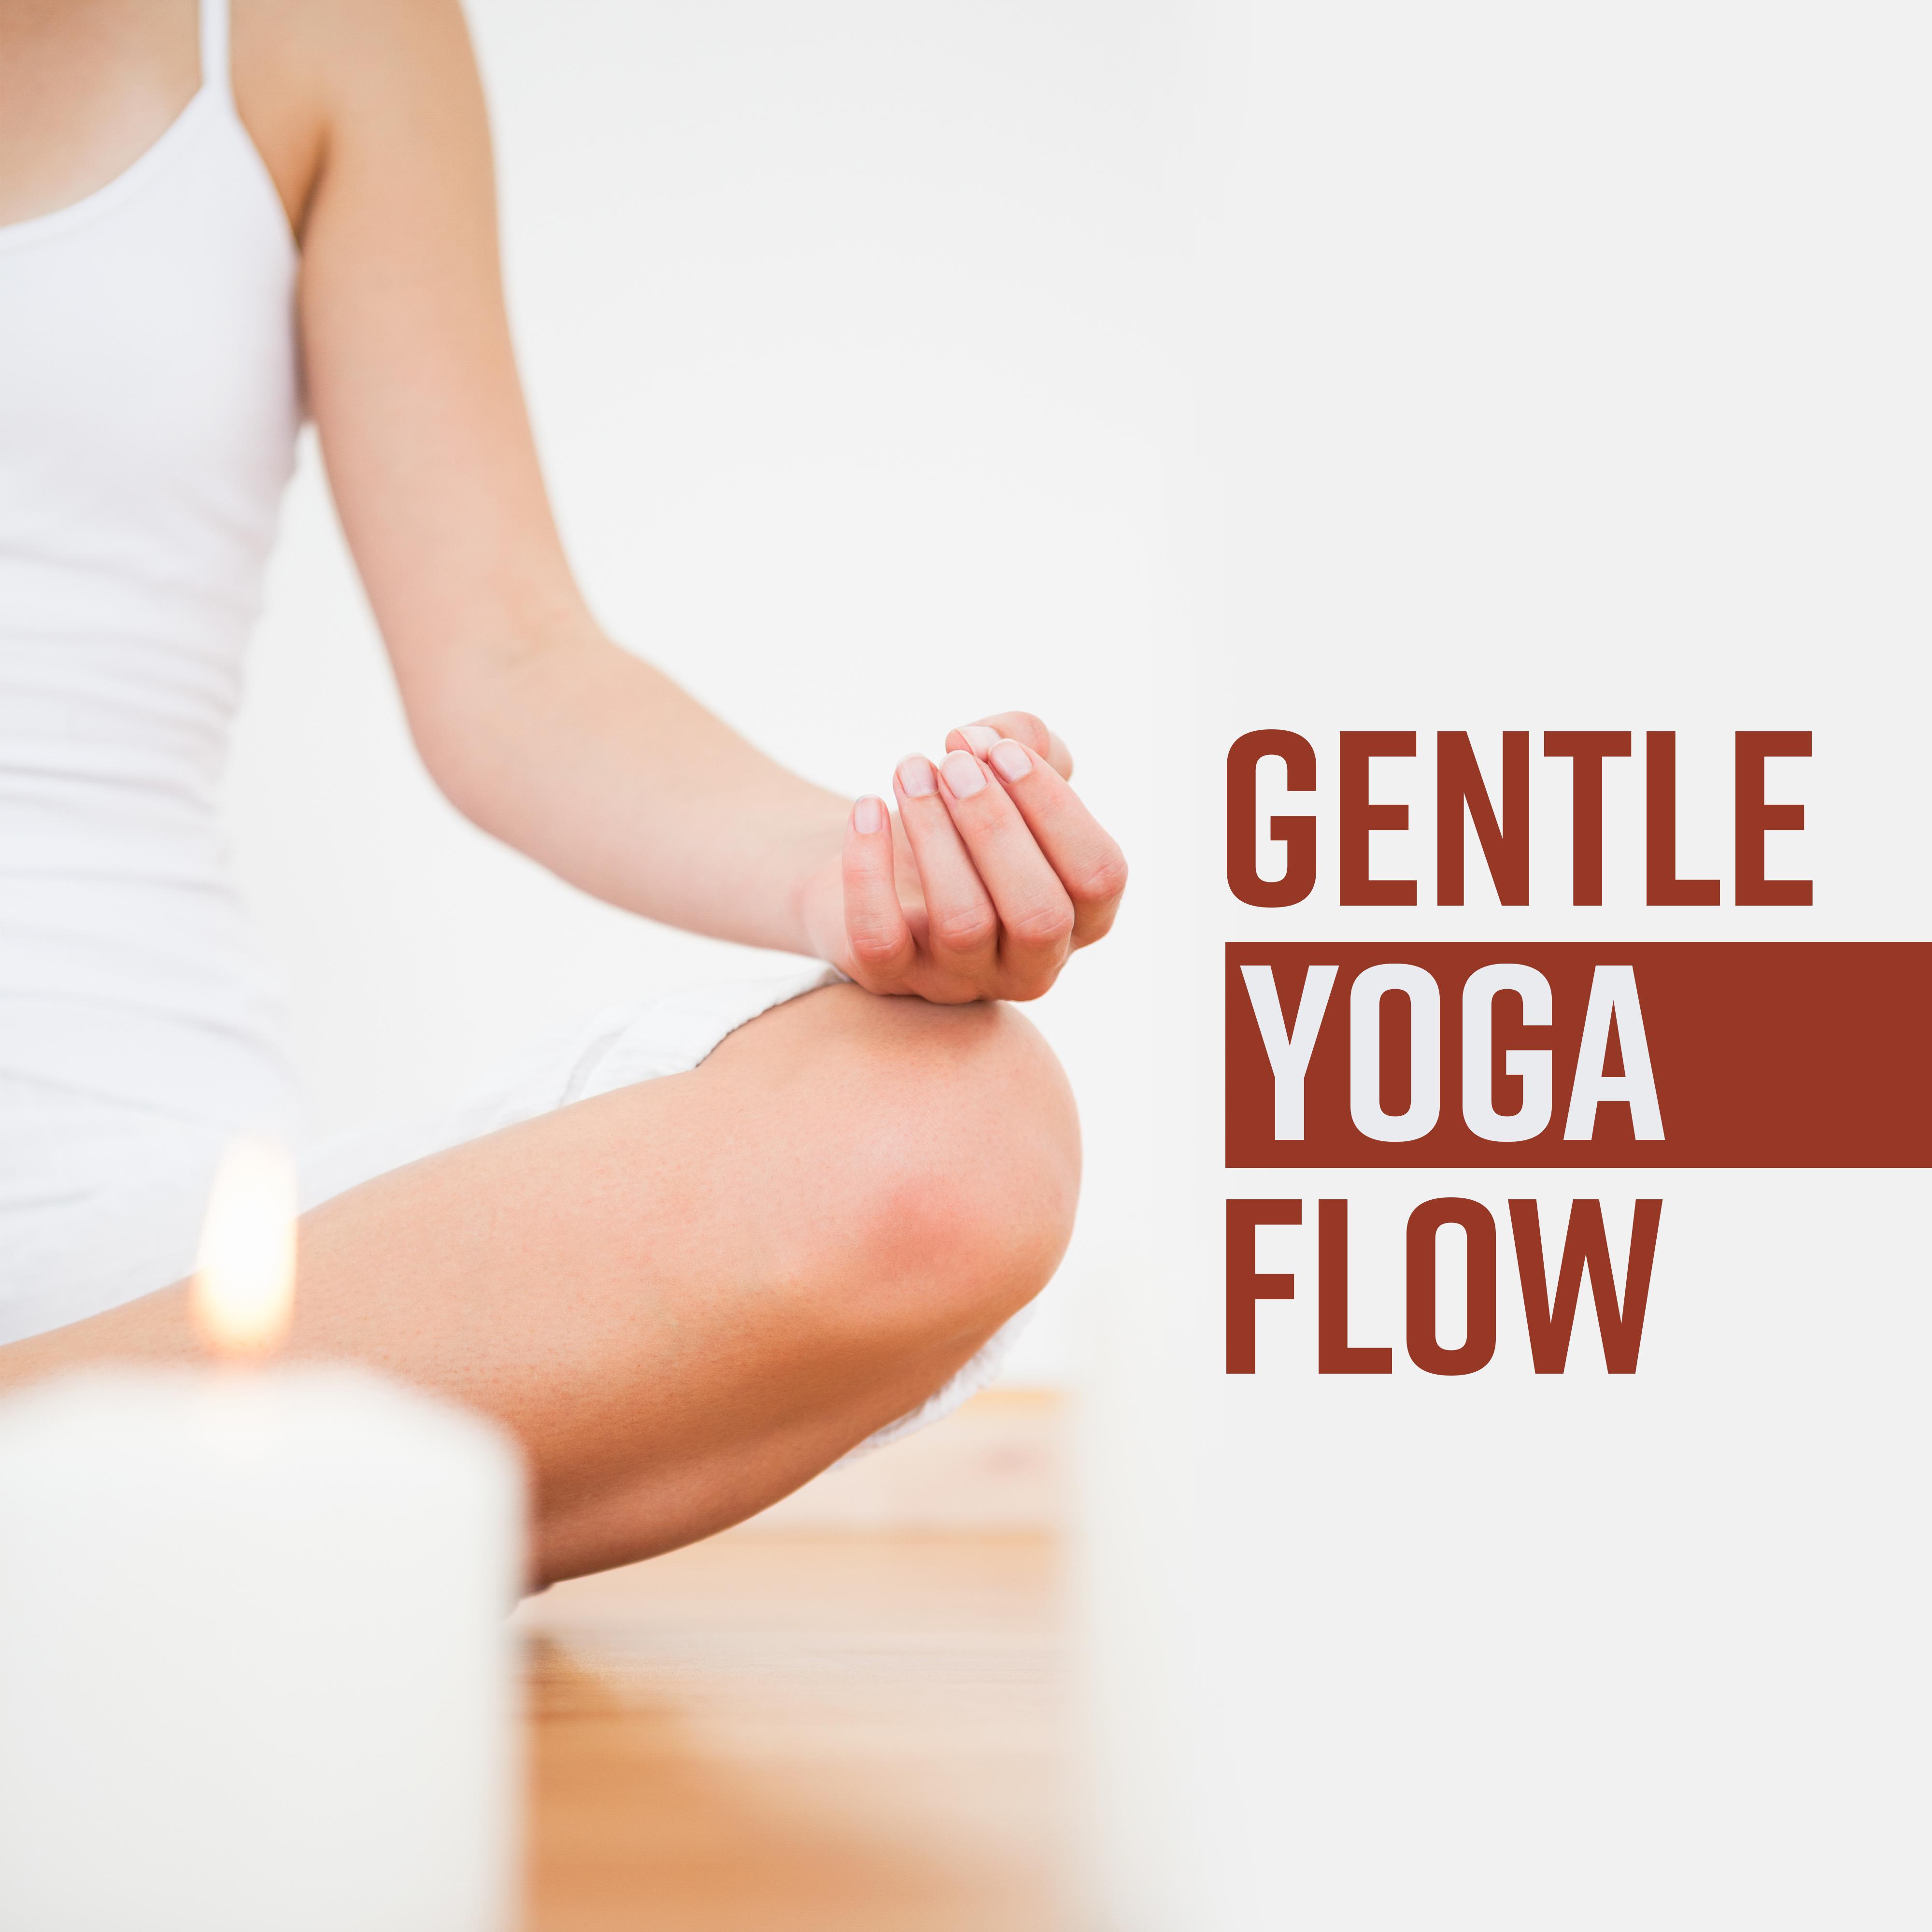 Gentle Yoga Flow